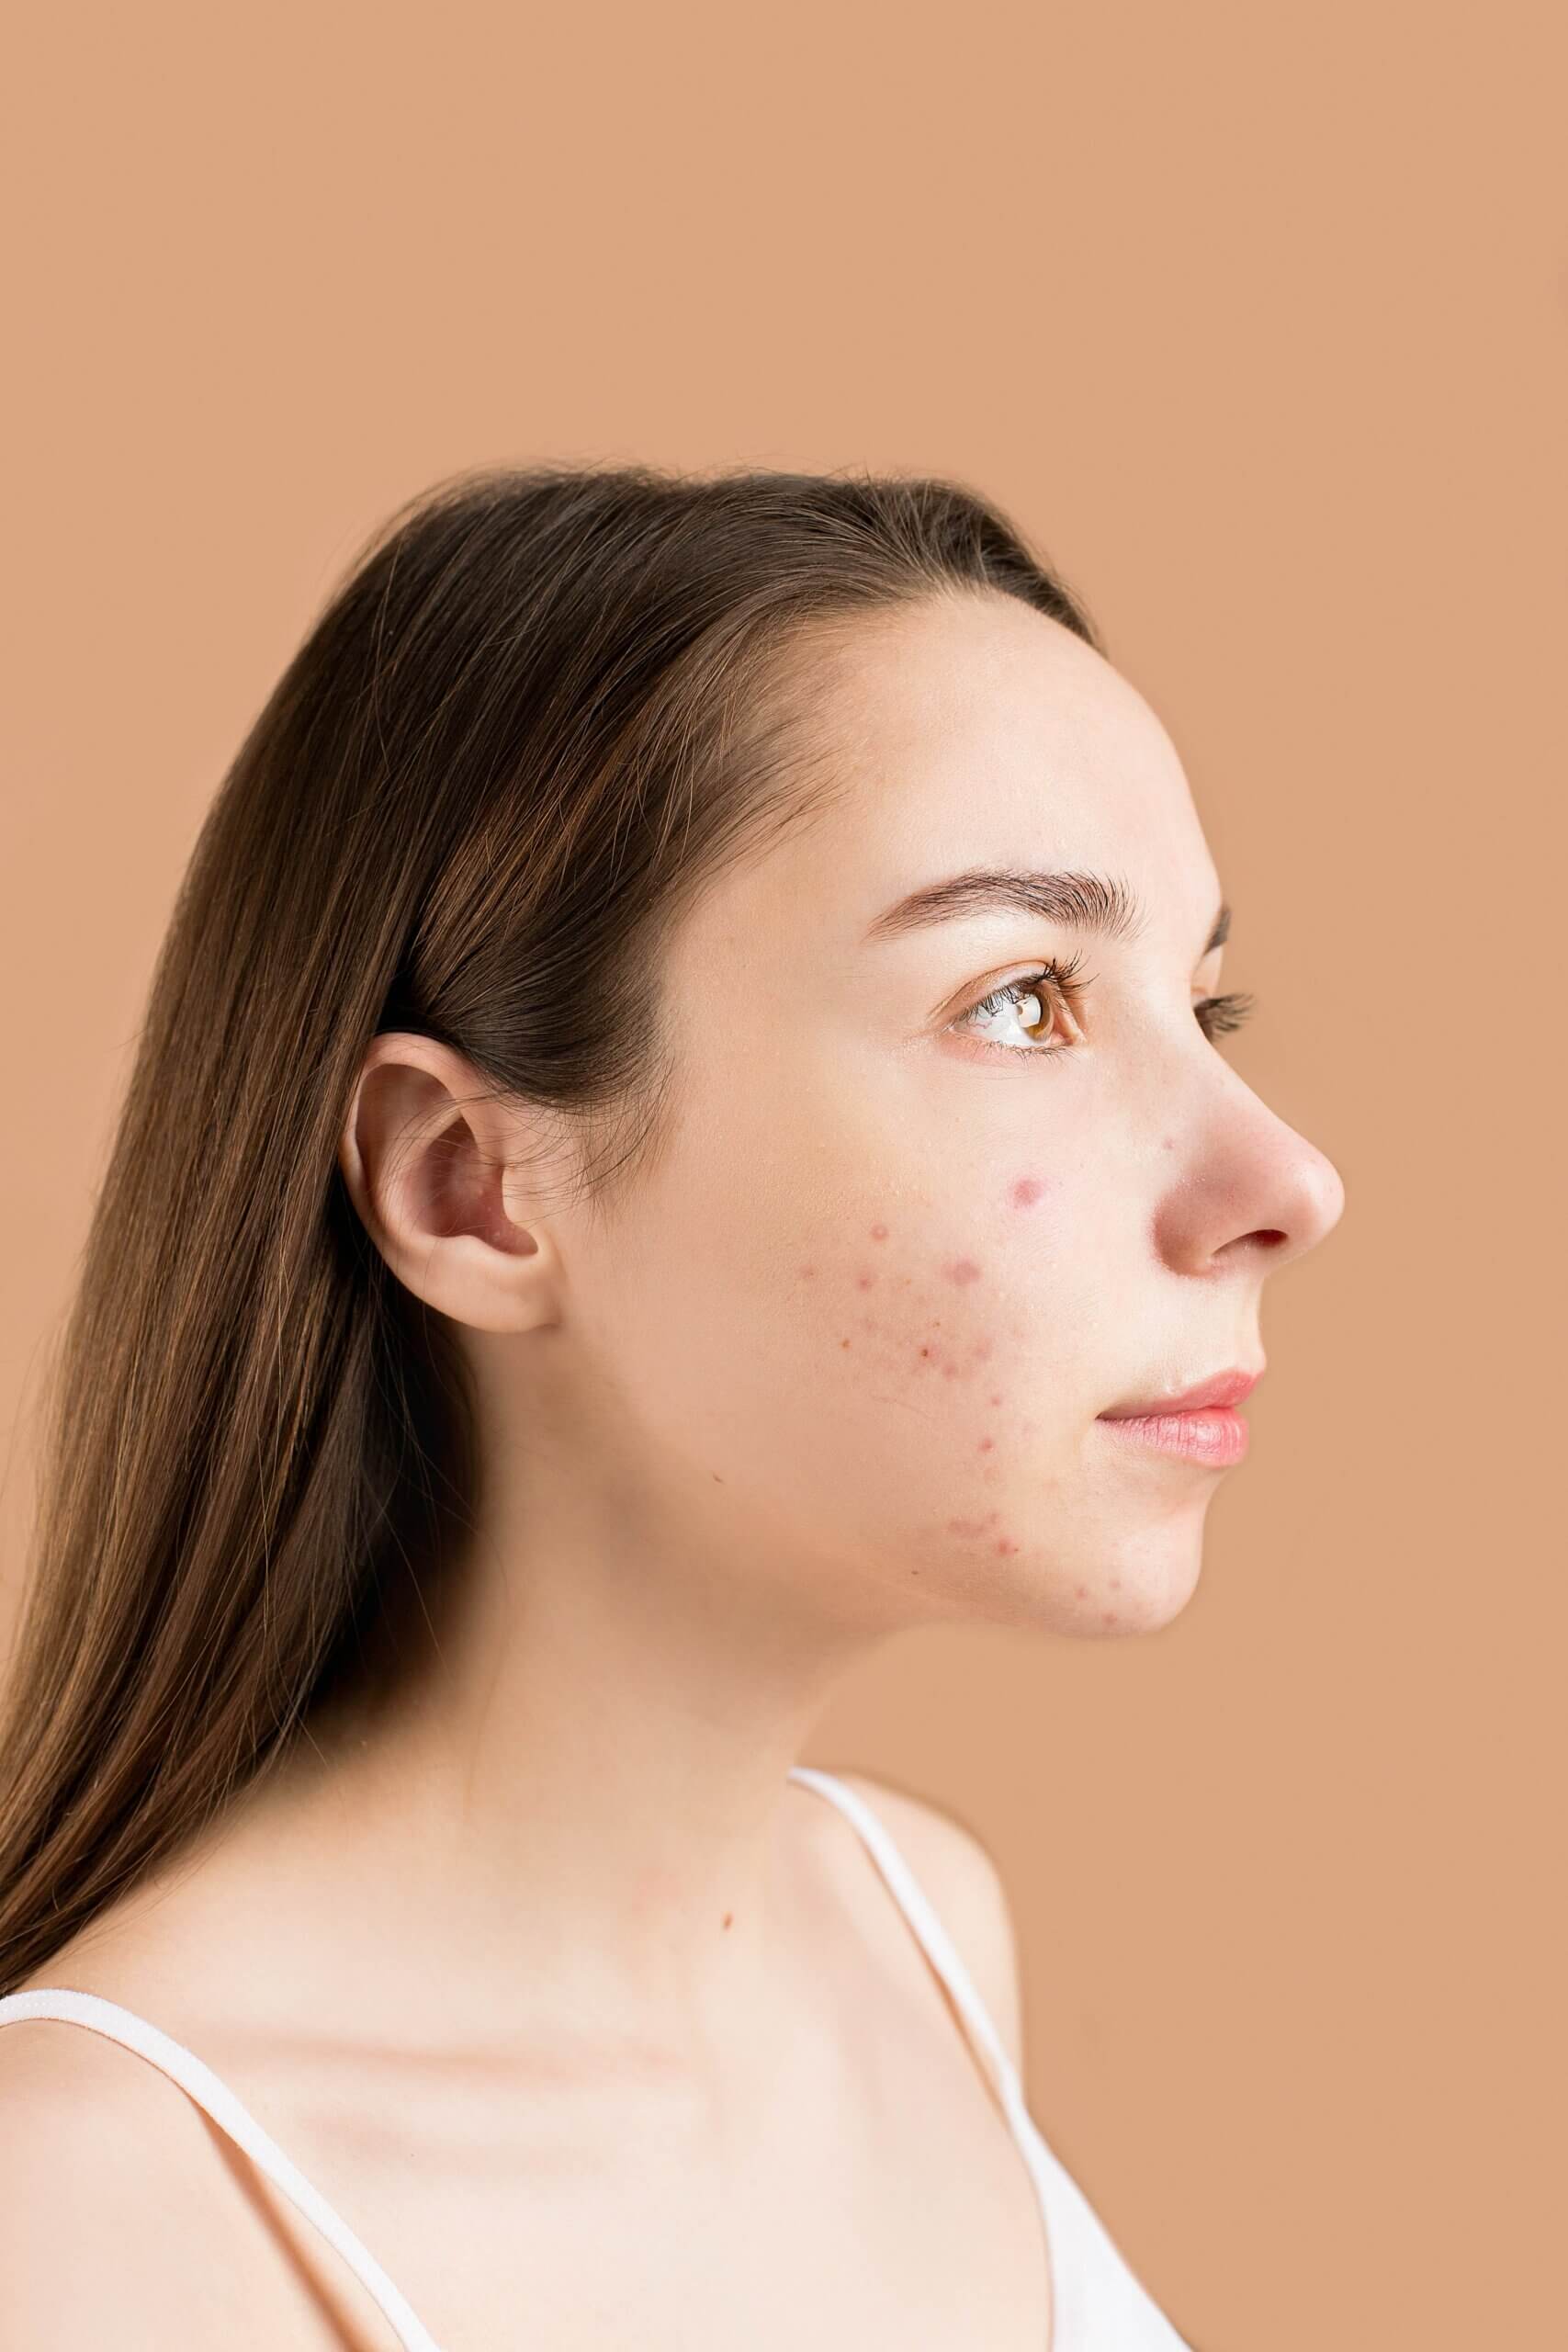 Ontstaan er darmklachten bij rosacea en acne?